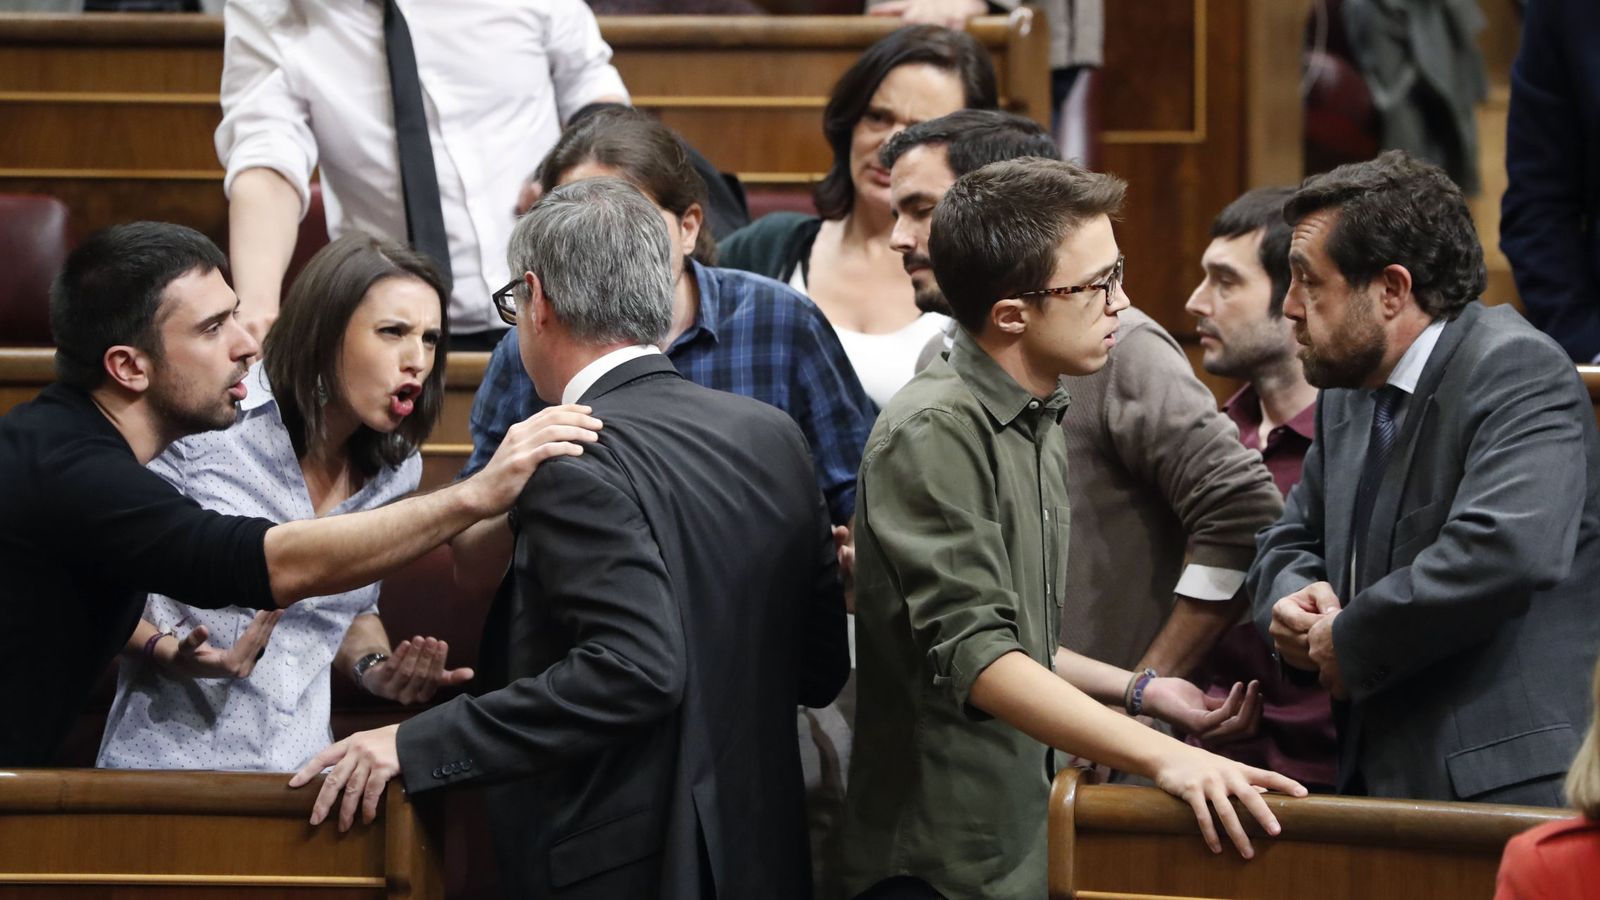 Foto: El diputado de Ciudadanos, José Manuel Villegas (c) discute con los miembros de Podemos Ramón Espinar (i), Irene Montero (2i) y Pablo Iglesias (c-atrás) durante el debate de investidura en el Congreso. (EFE)